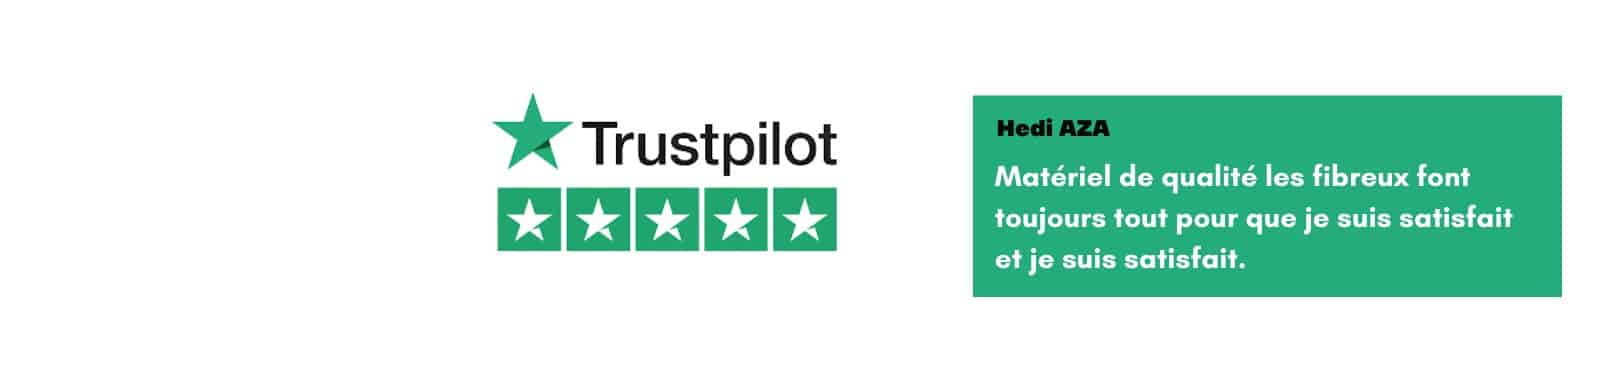 Trustpillot 5